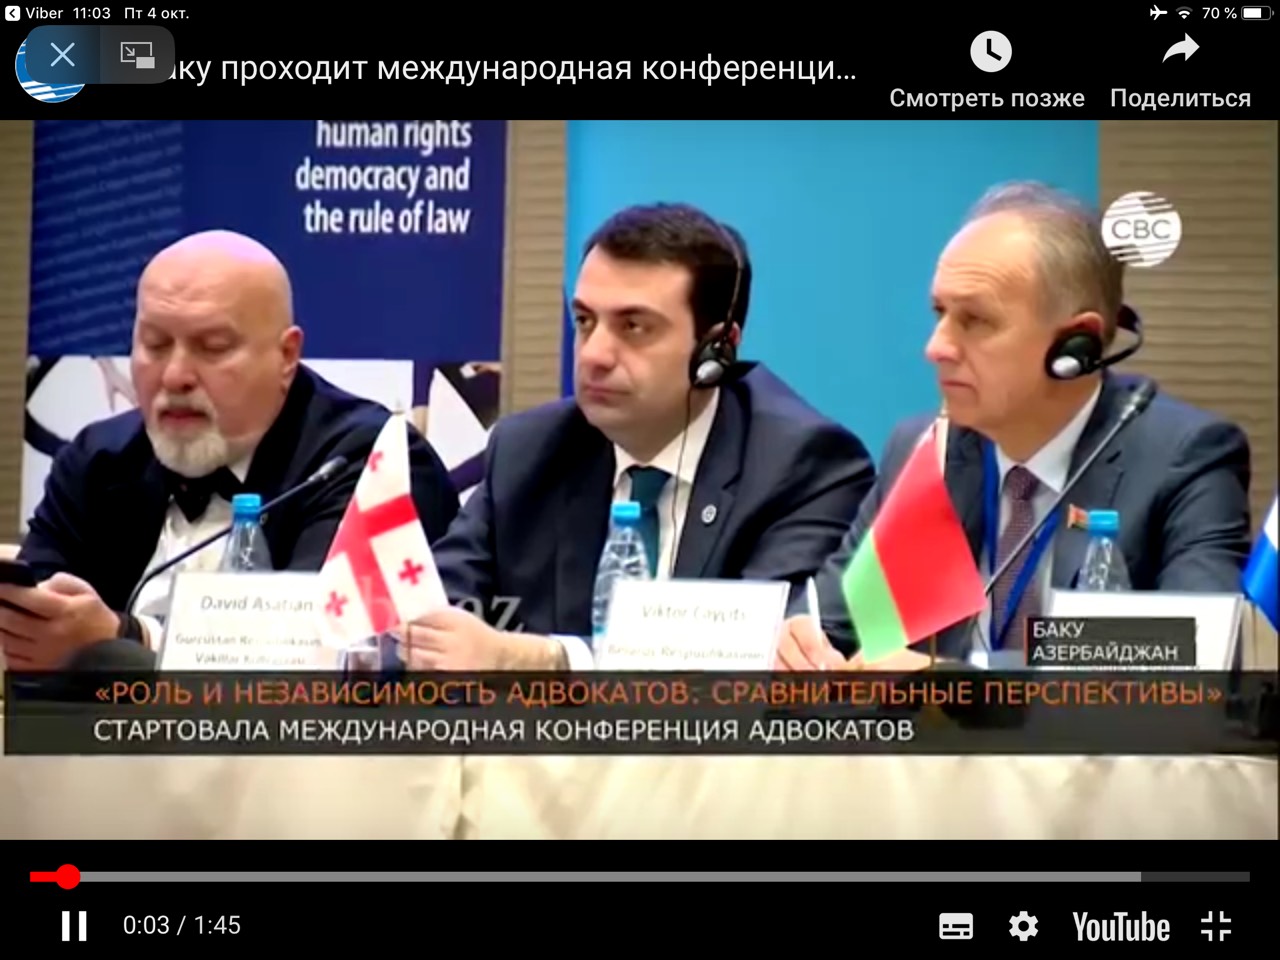 Делегация белорусской адвокатуры участвует в международной конференции в Баку